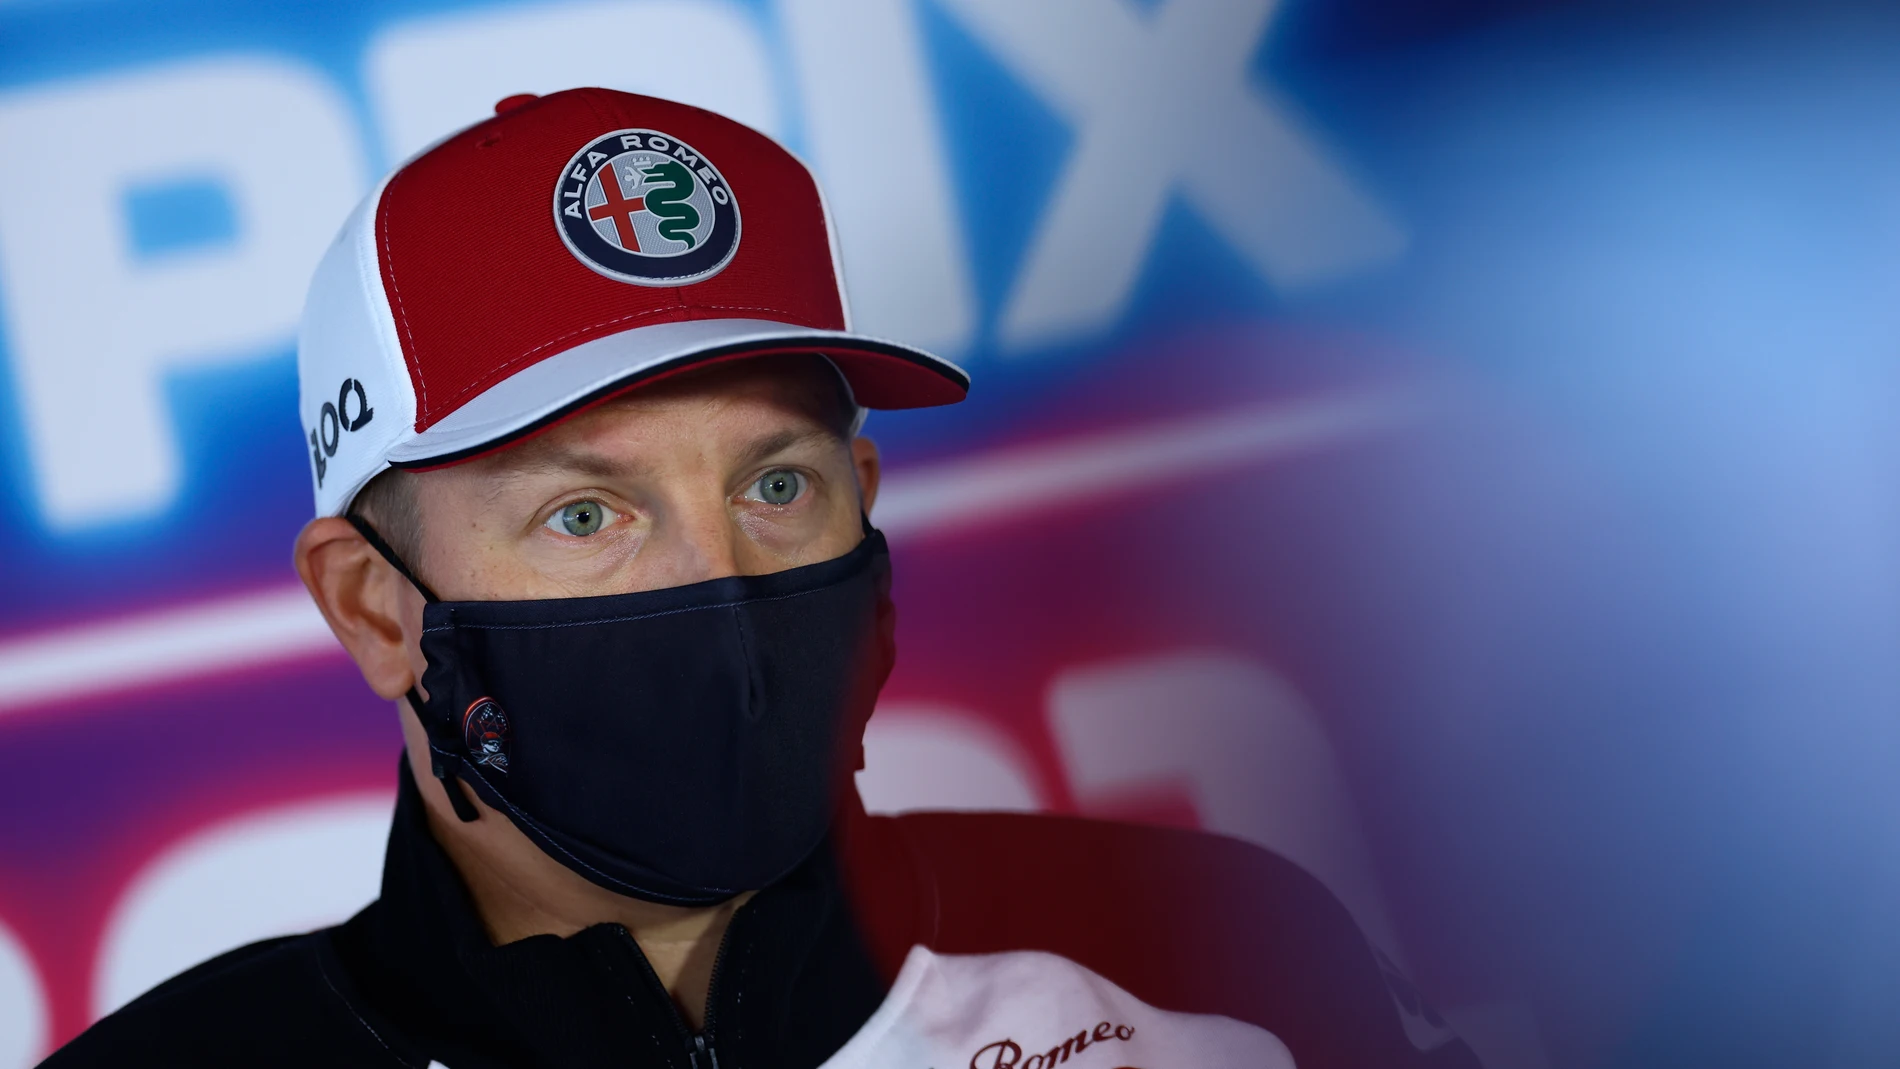 Kimi Räikkönen da positivo en coronavirus y le sustituye Robert Kubica en Países Bajos